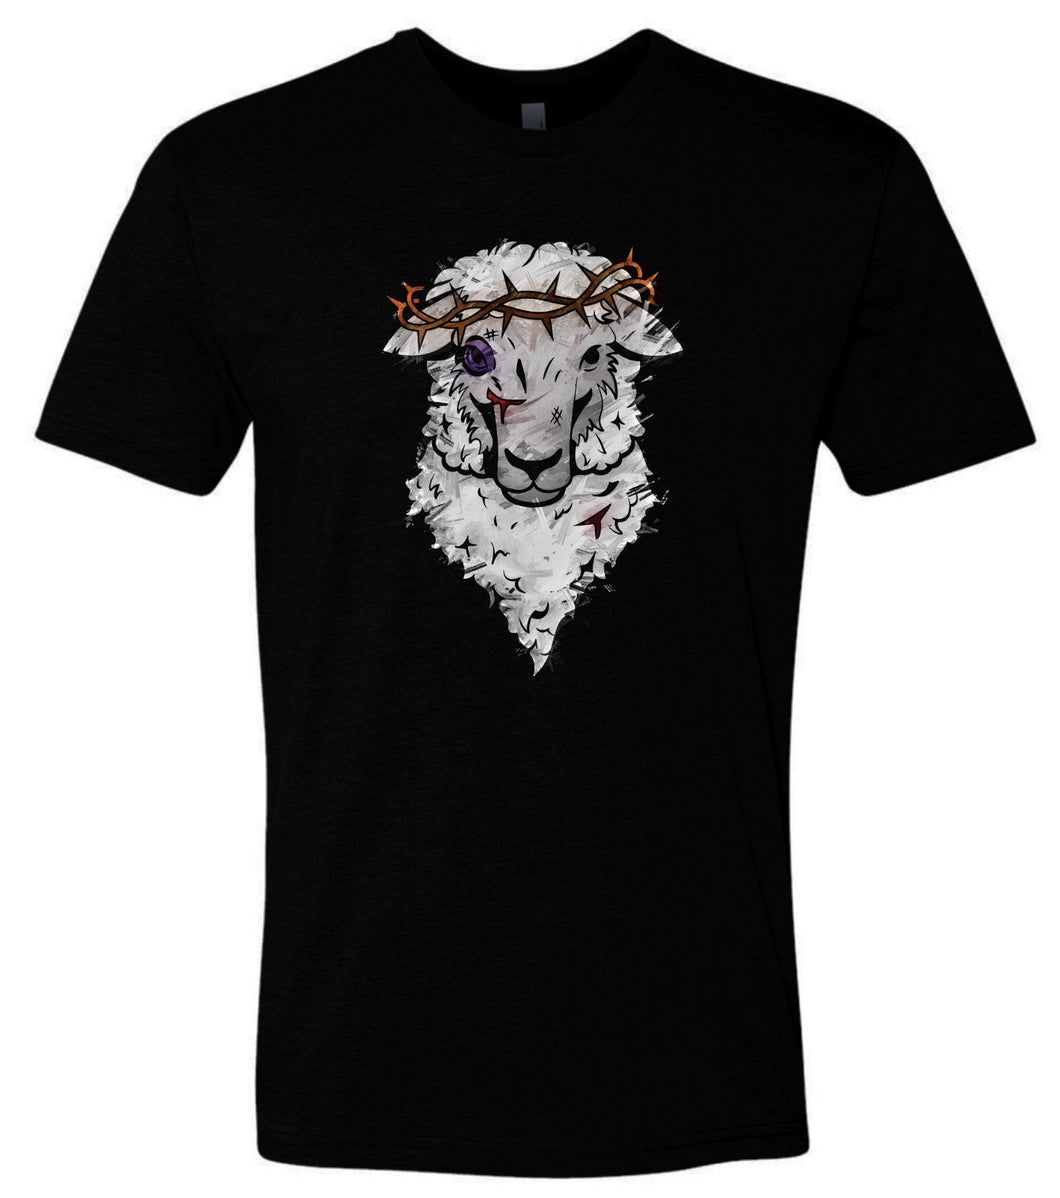 Lamb of God T-shirt